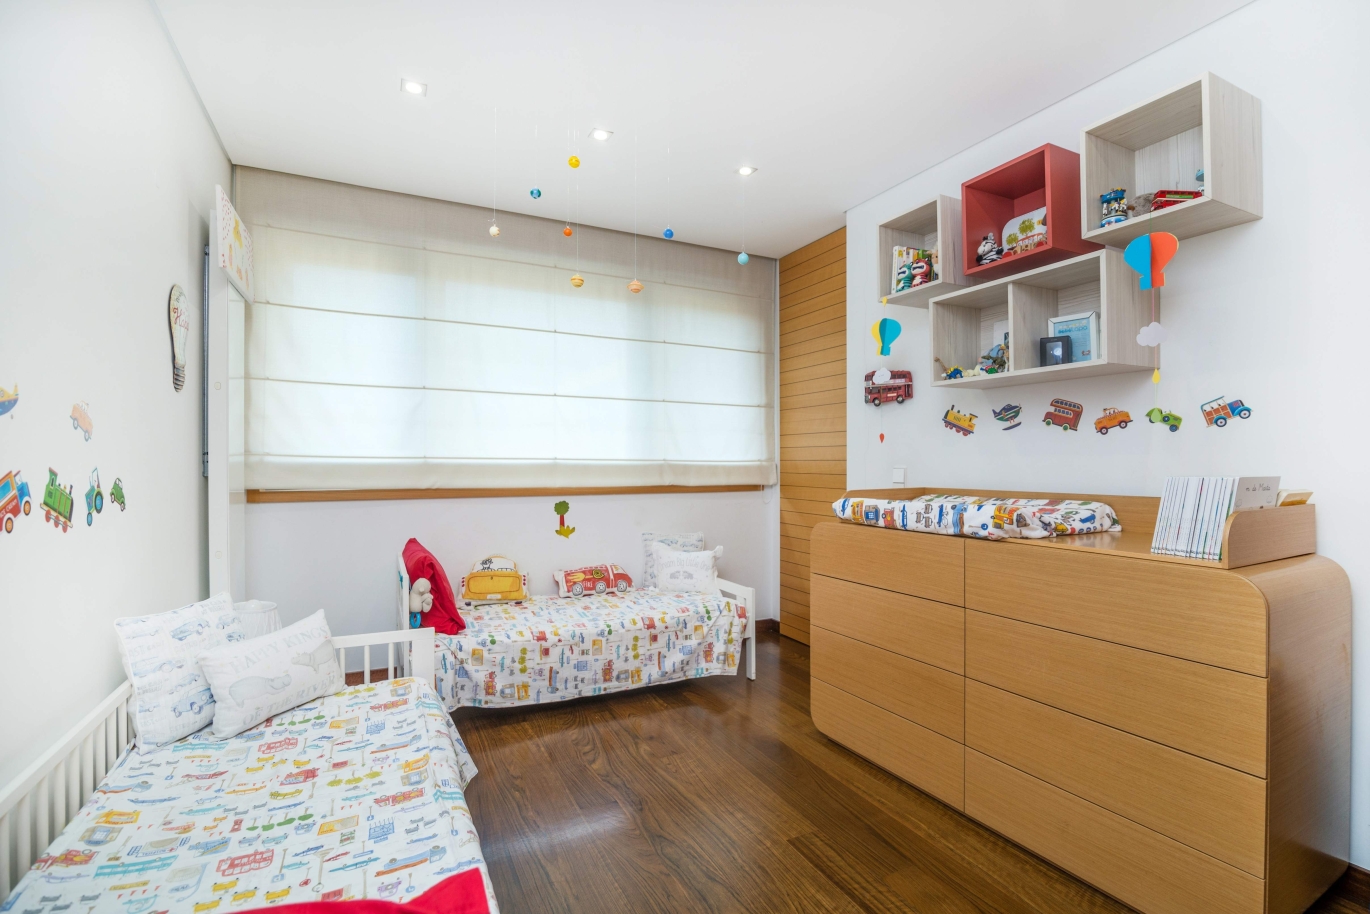 Sale apartment in private condominium w/ river views, Porto, Portugal_121035